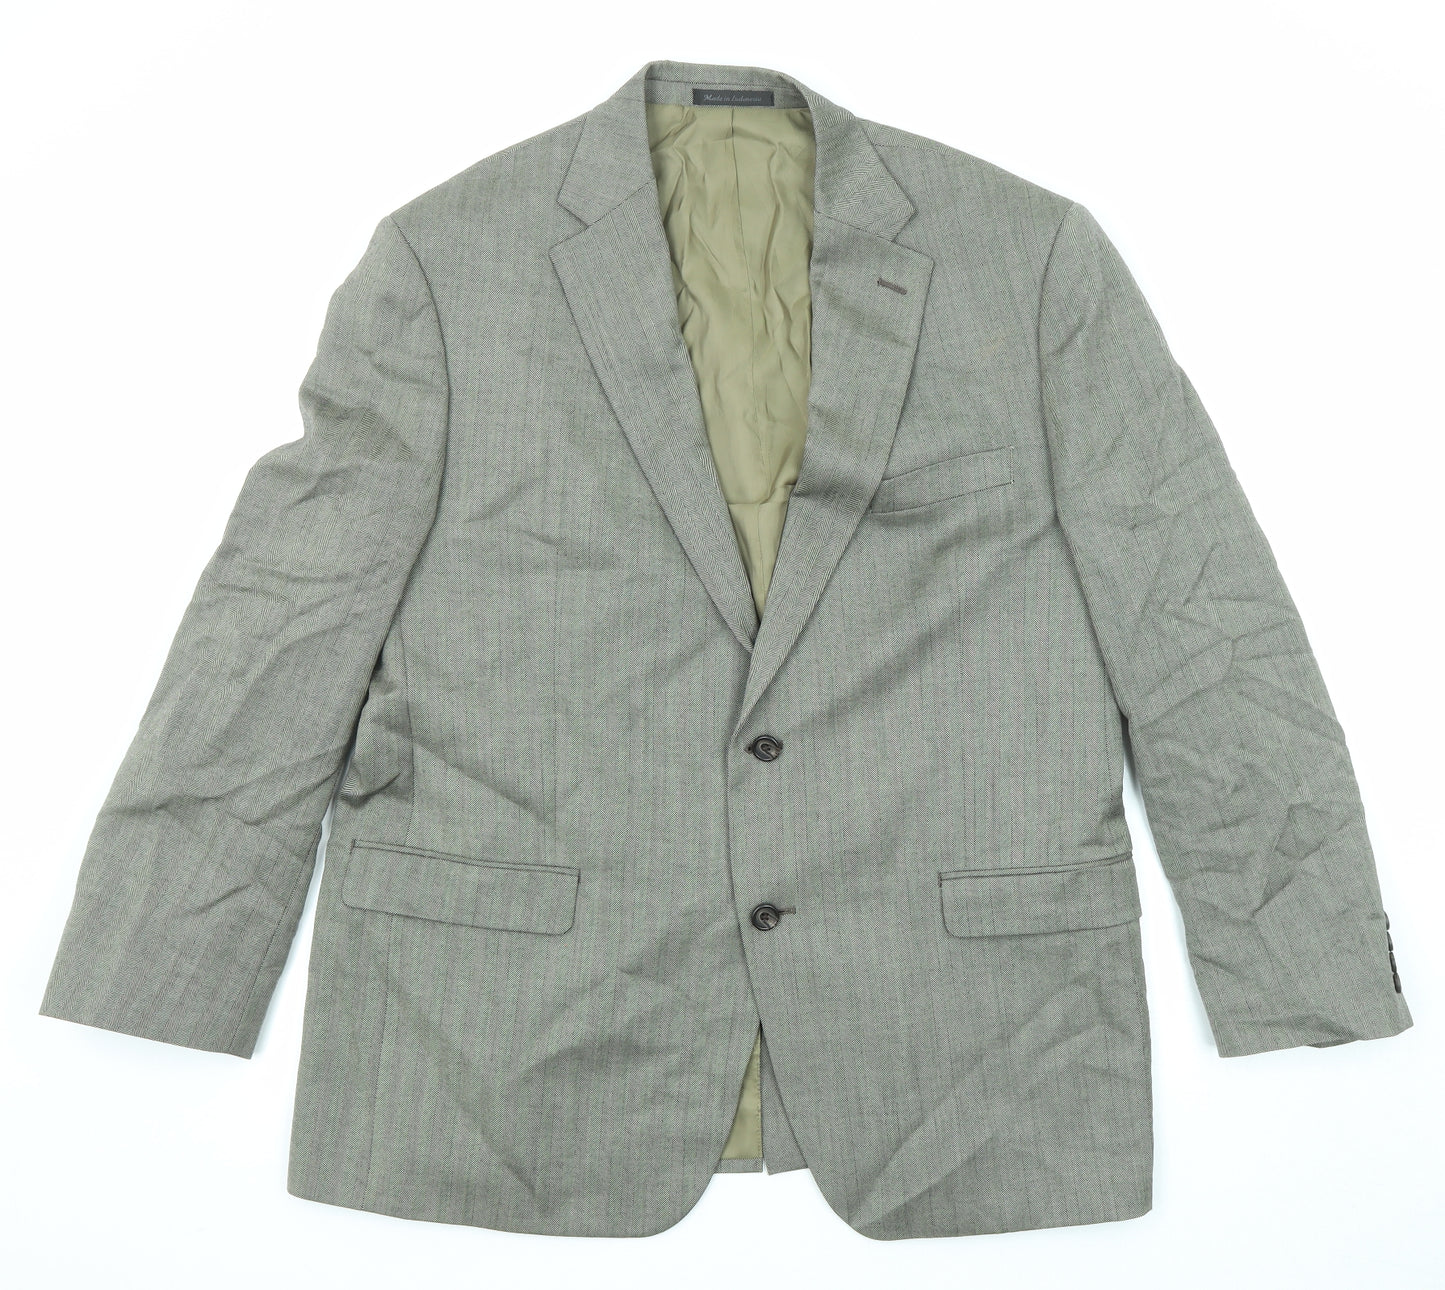 Ralph Lauren Mens Grey Herringbone Wool Jacket Suit Jacket Size 44 Regular